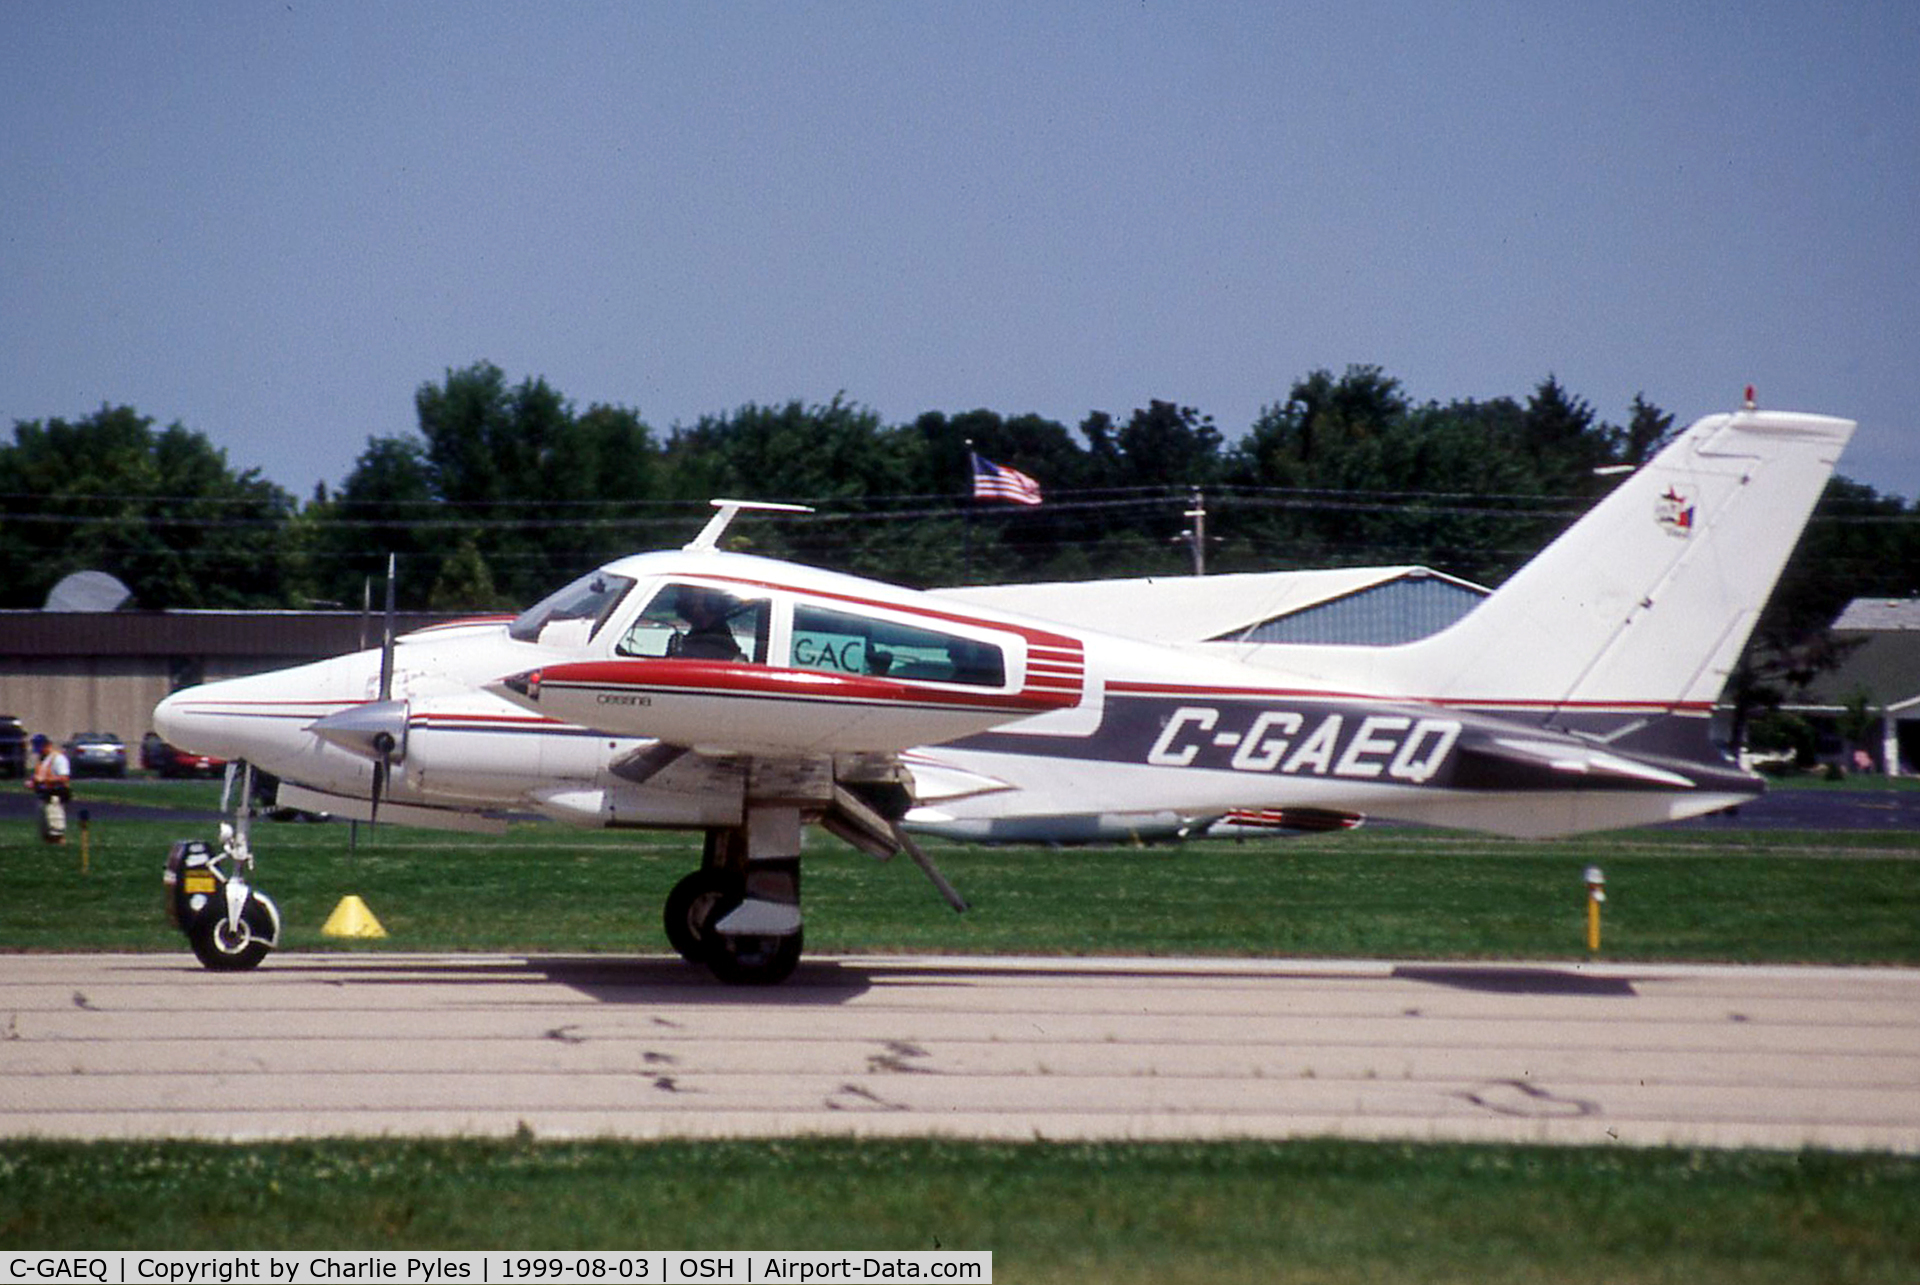 C-GAEQ, 1970 Cessna 310Q C/N 310Q0044, Arriving at the show